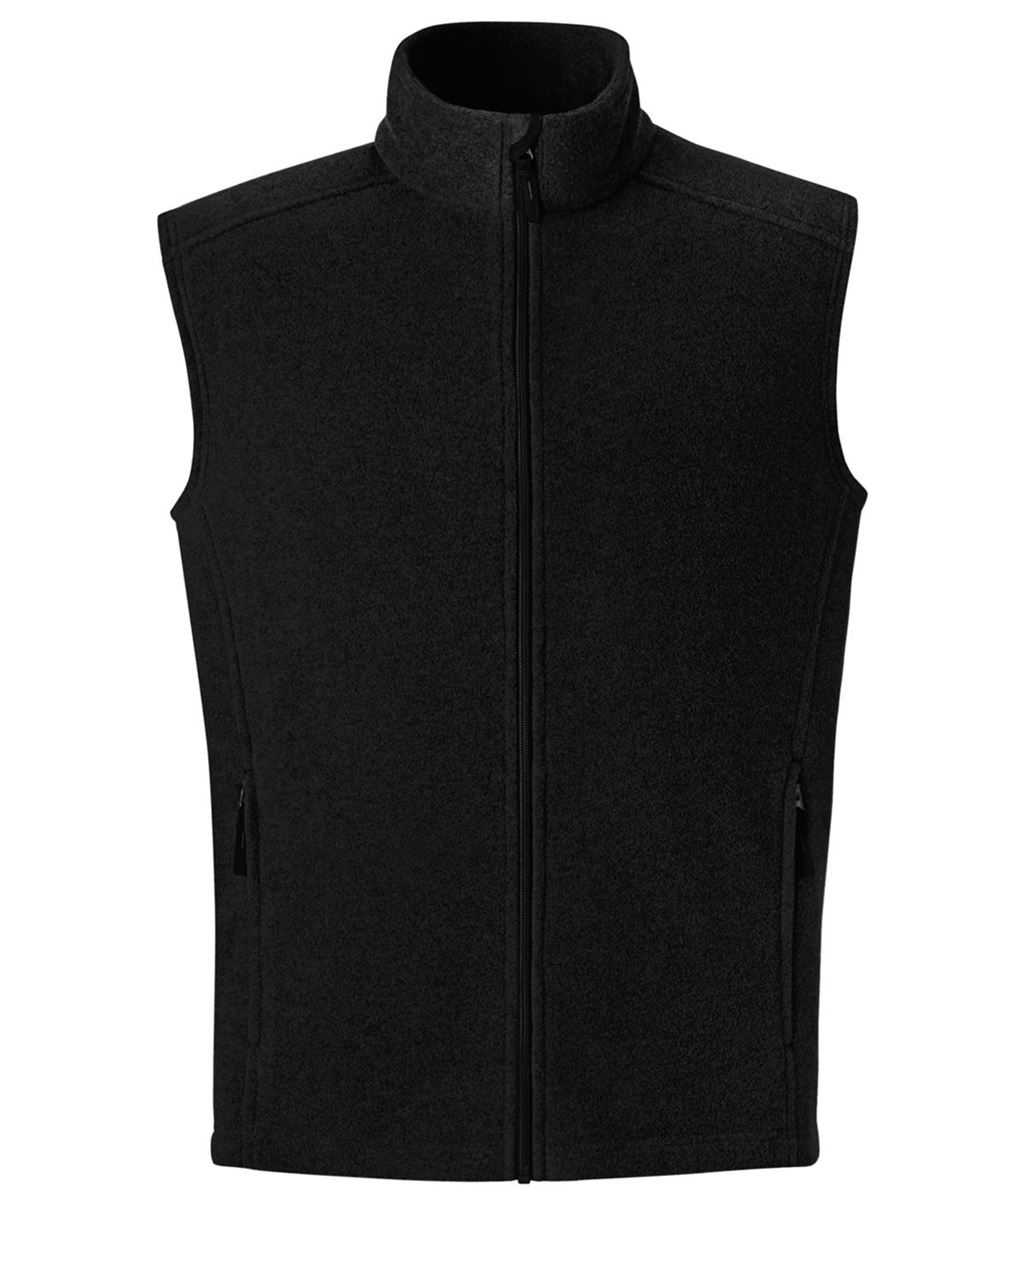 Picture of Core365 Tall Men's Fleece Vests